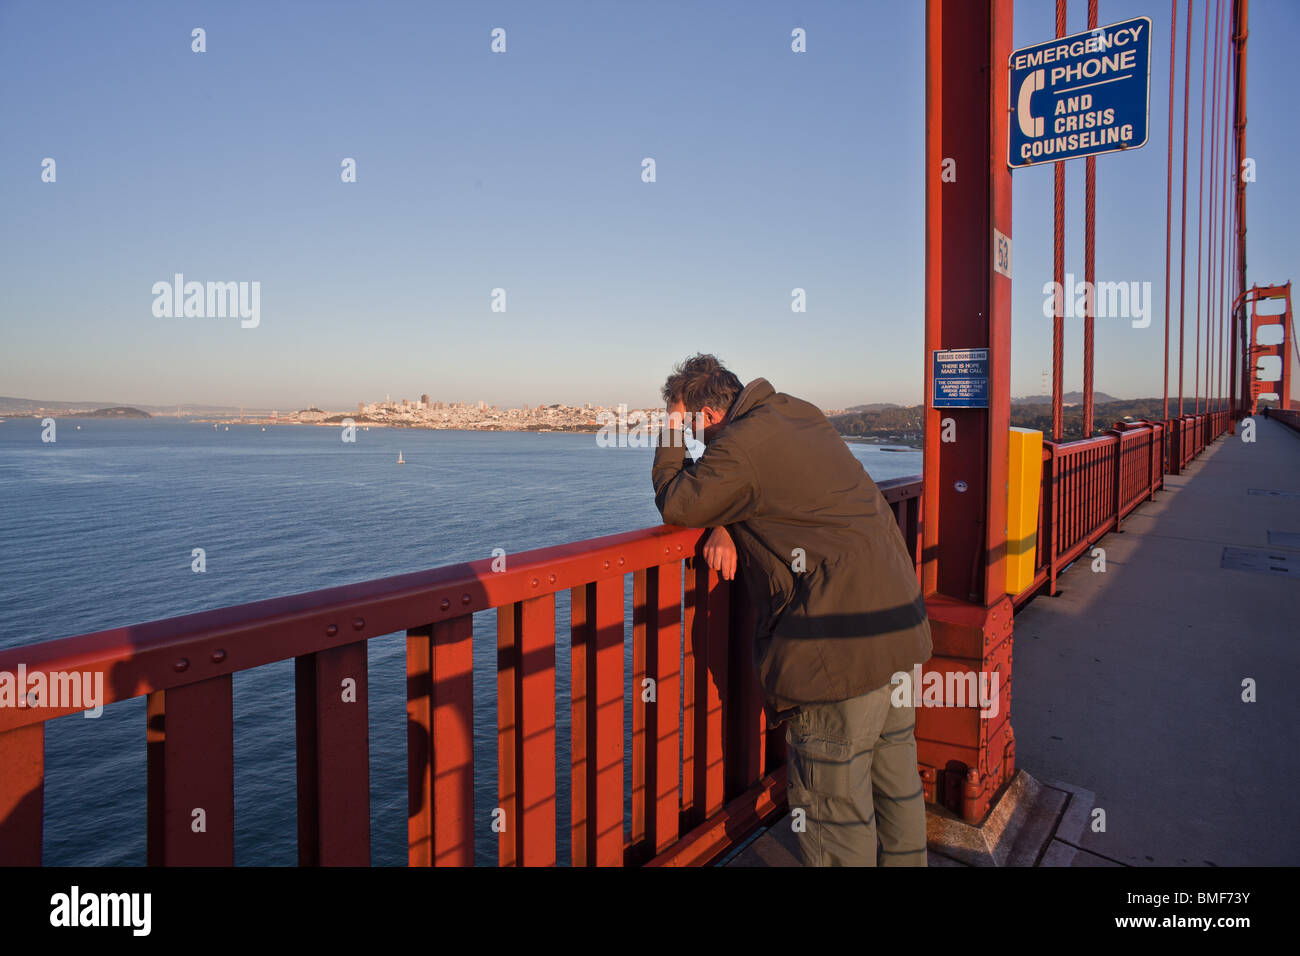 Un indisponente o premuto man sul Golden Gate Bridge accanto a una prevenzione dei suicidi hotline segno e telefono. Foto Stock